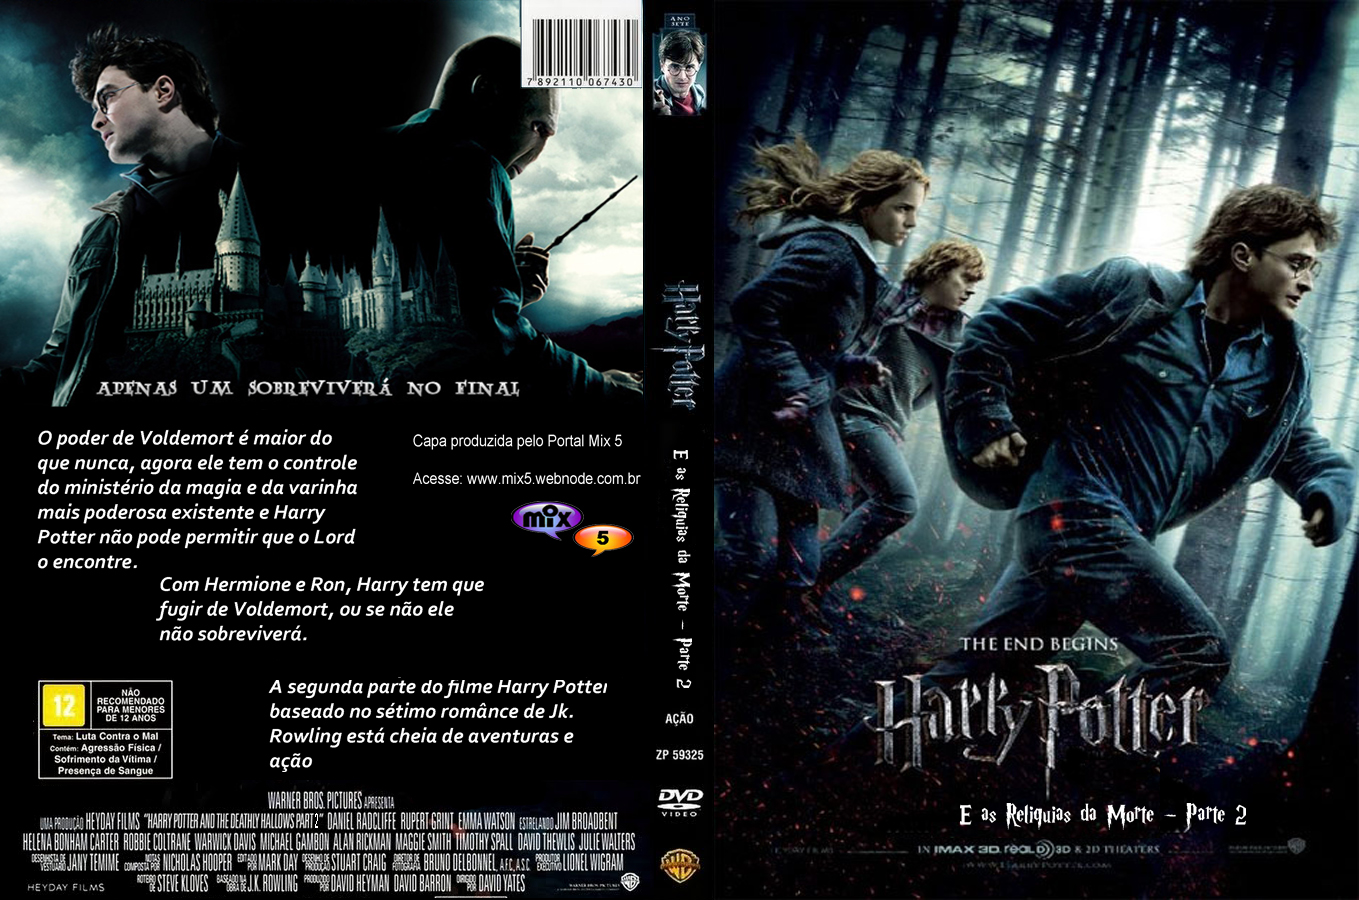 http://1.bp.blogspot.com/-6Xlm9iTIFlQ/TjbZ3WJNjOI/AAAAAAAAAbA/-ElWyHoo8po/s1600/Harry+Potter+Final.jpg